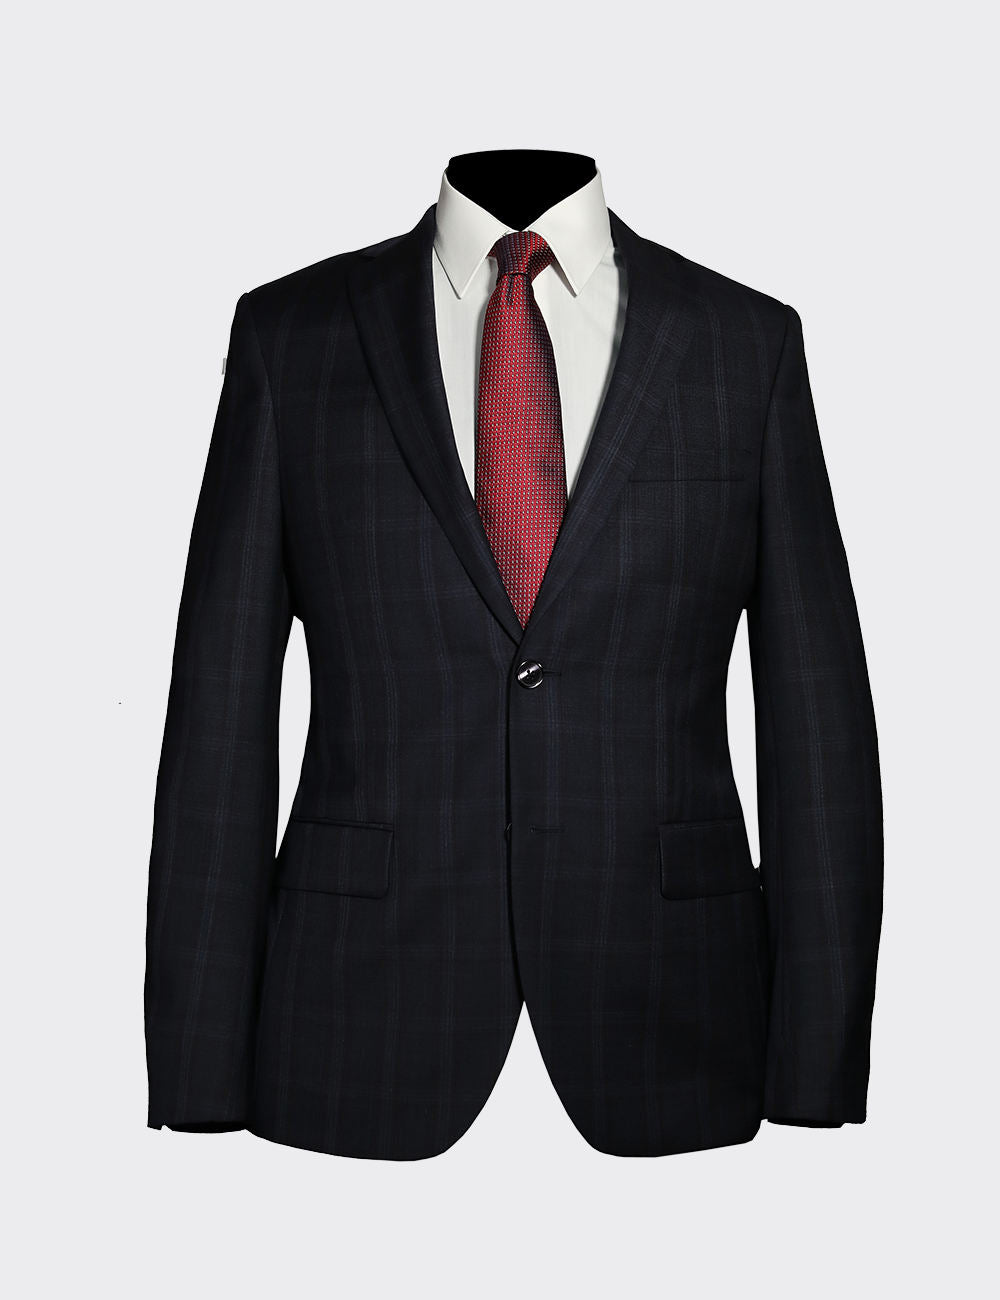 Suits-100%WoolFabricSlim fit cut best quality Italian suits best price latest suits fashion tuxedo suit